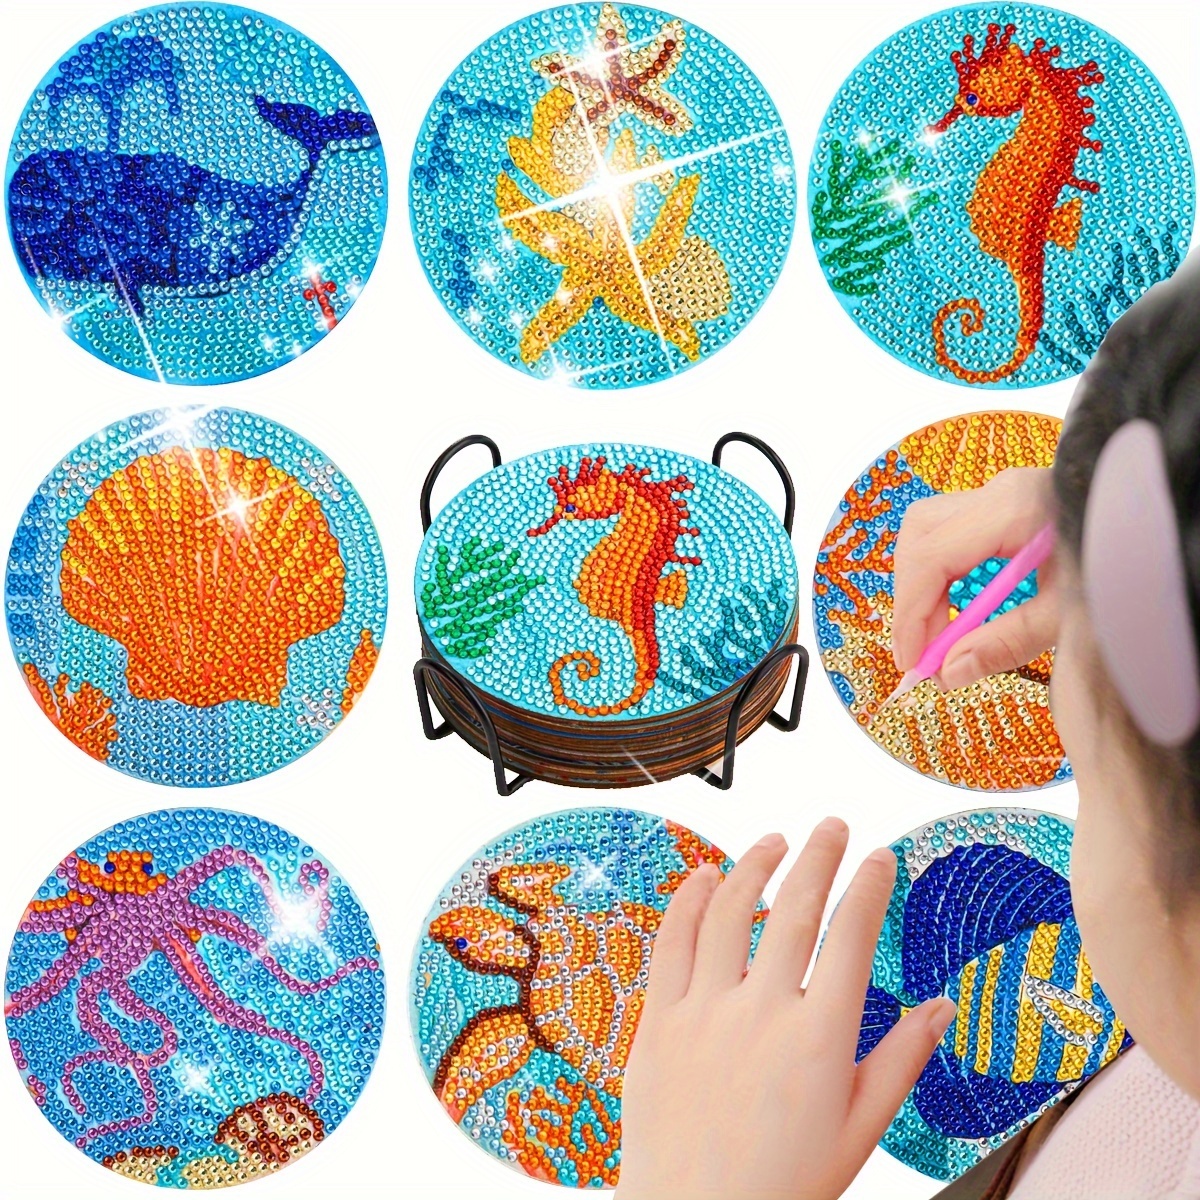 8PCS Animal Diamond Painting Coasters Kit, Shield Shape Diamond Painting  Coasters with Holder, DIY Drink Coasters with Cork Base Diamond Painting